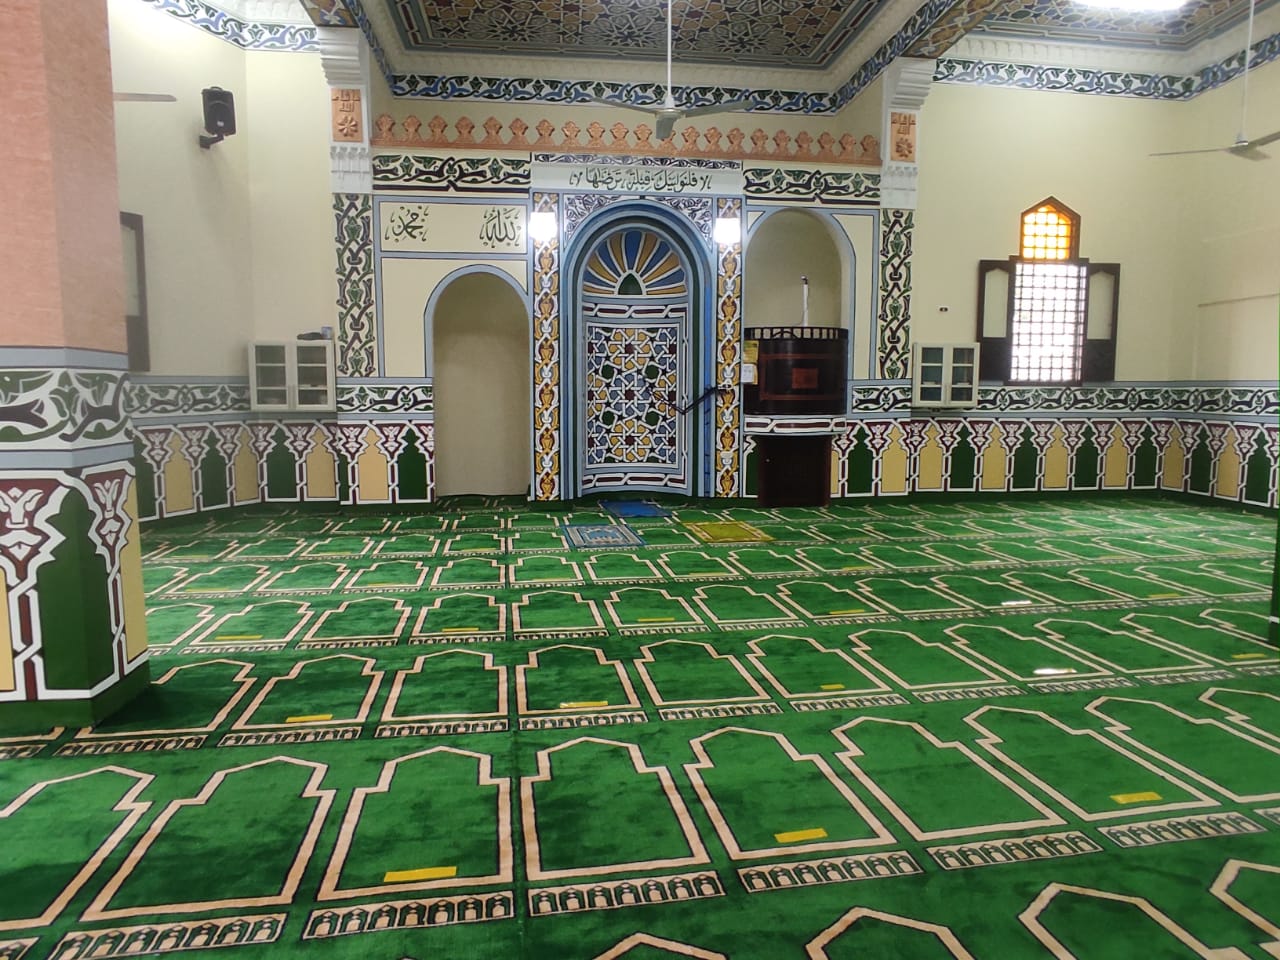   افتتاح مسجدين جديدين بحوش عيسى بتكلفة 2 مليون و650 ألف جنيه